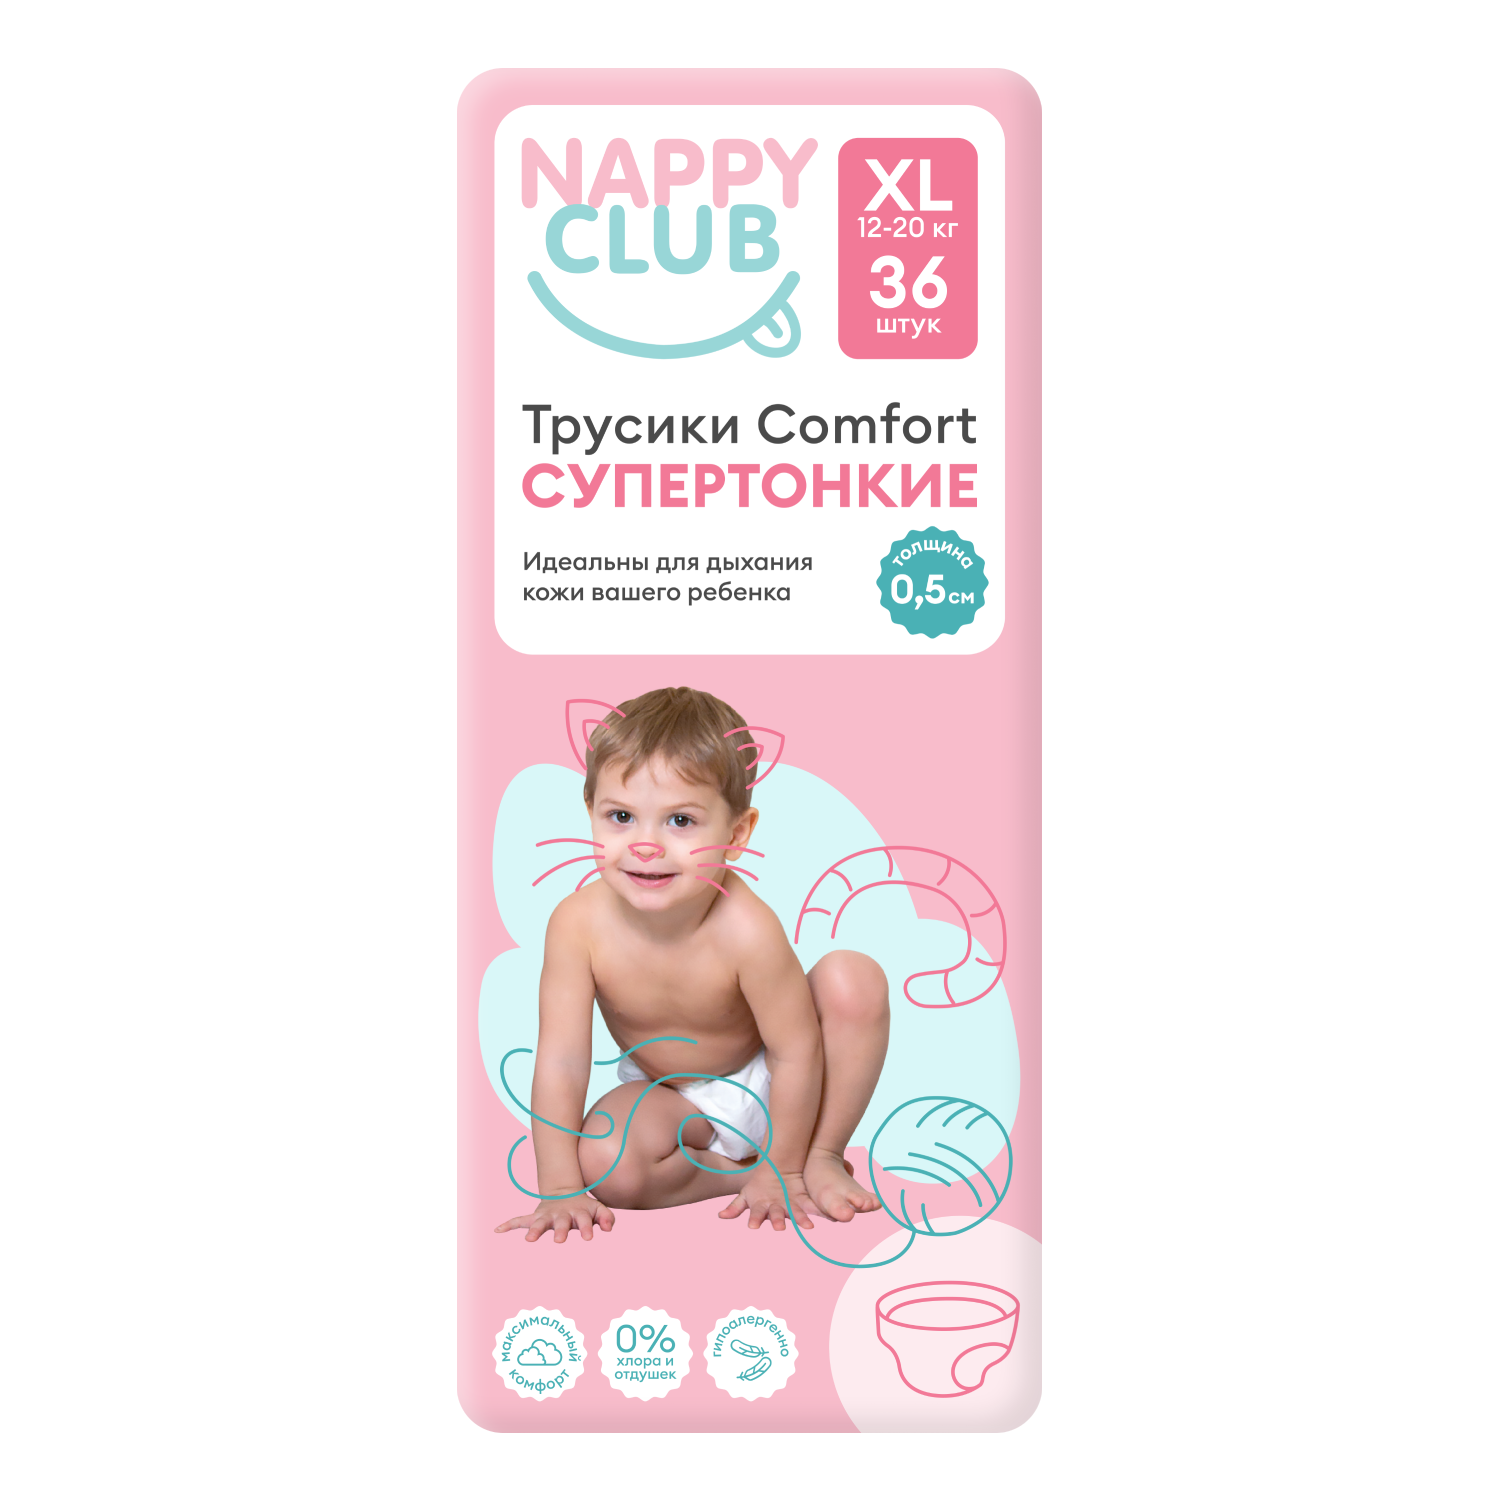 NappyClub трусики Comfort дневные супер-тонкие XL (12-20 кг) 36 шт.